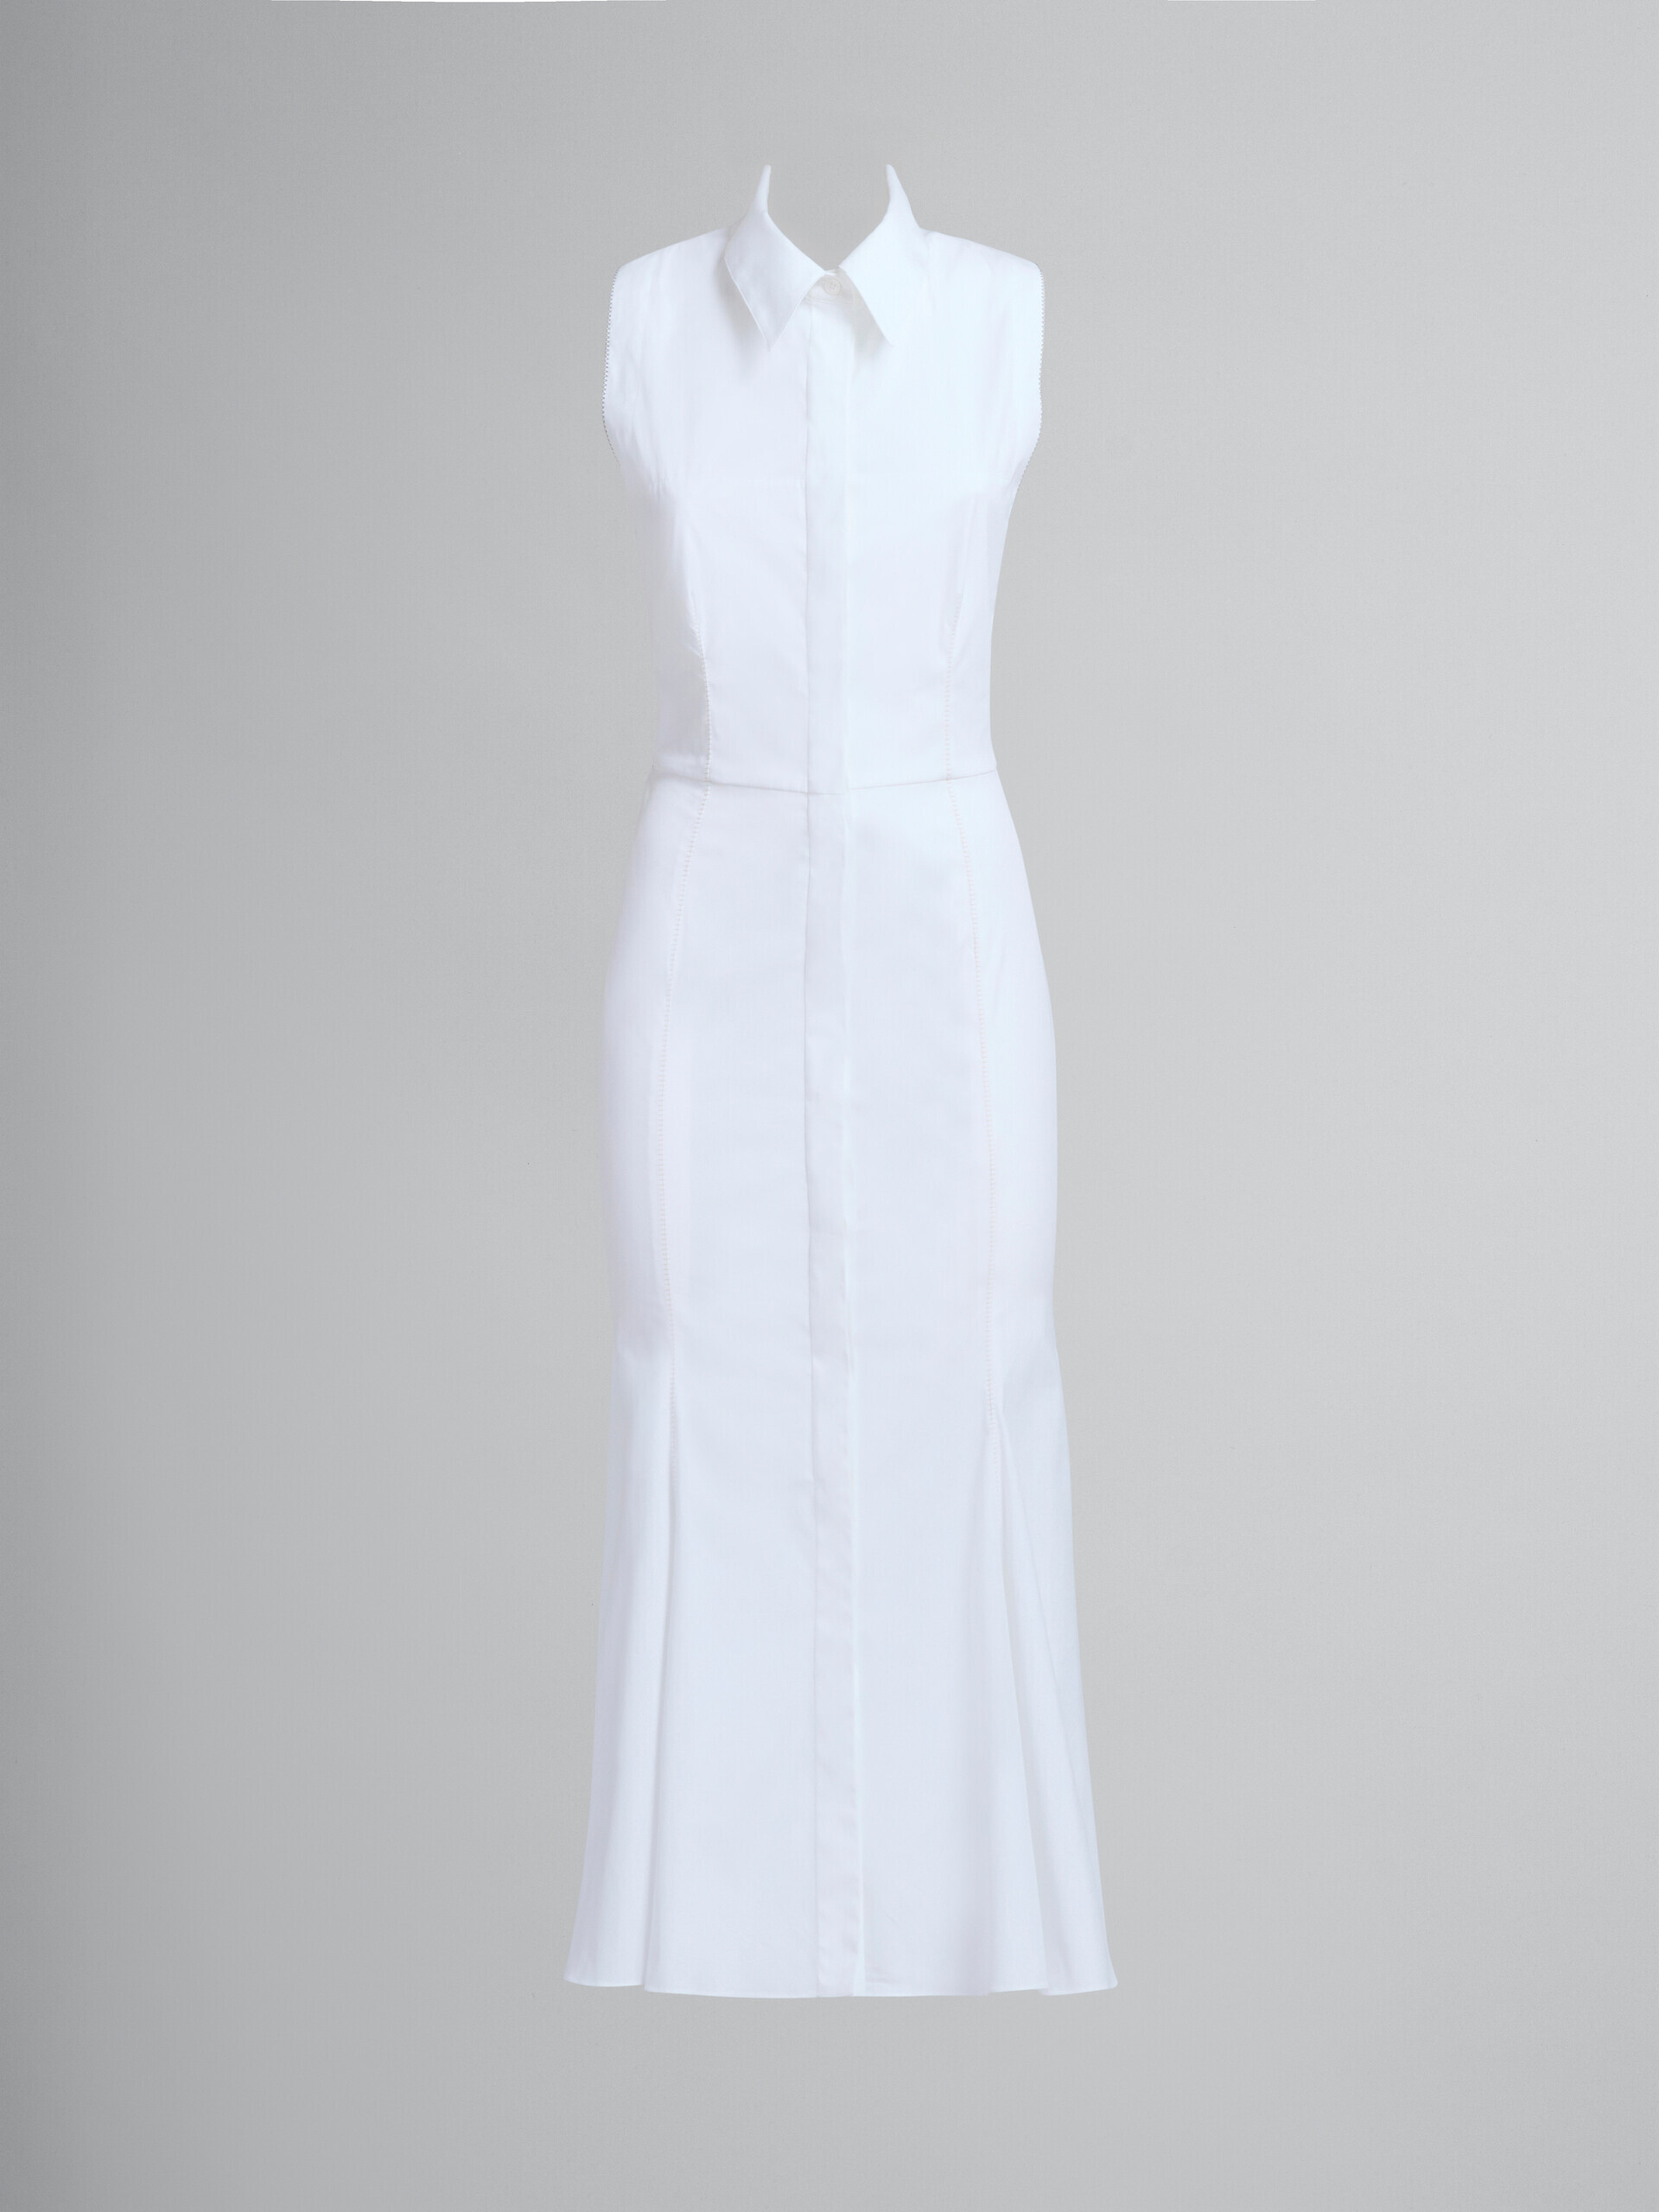 Vestido de corte sirena de algodón orgánico blanco - Vestidos - Image 2